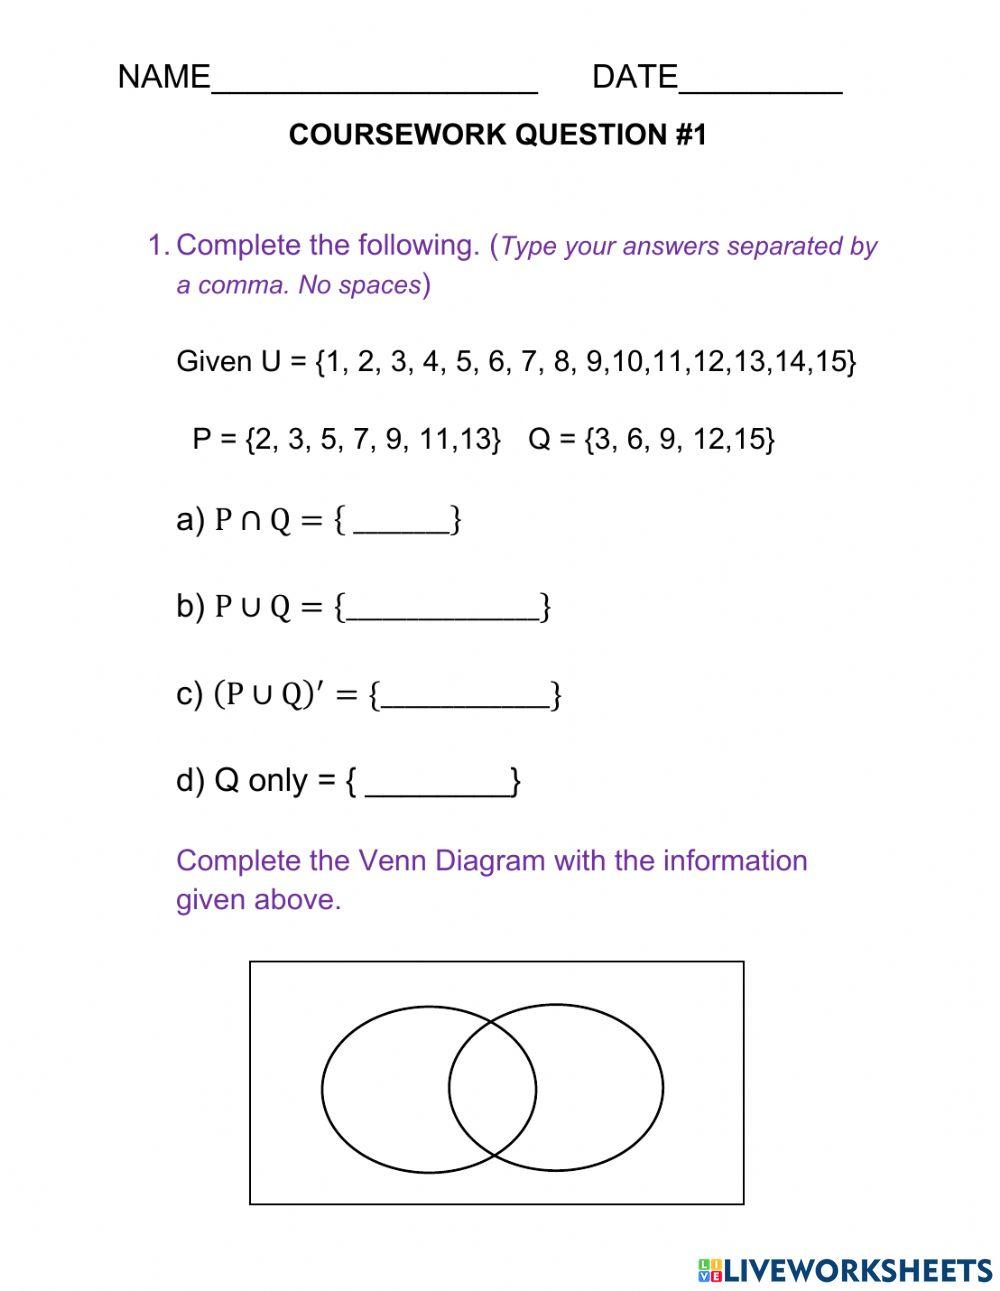 Coursework -1 Venn Diagrams